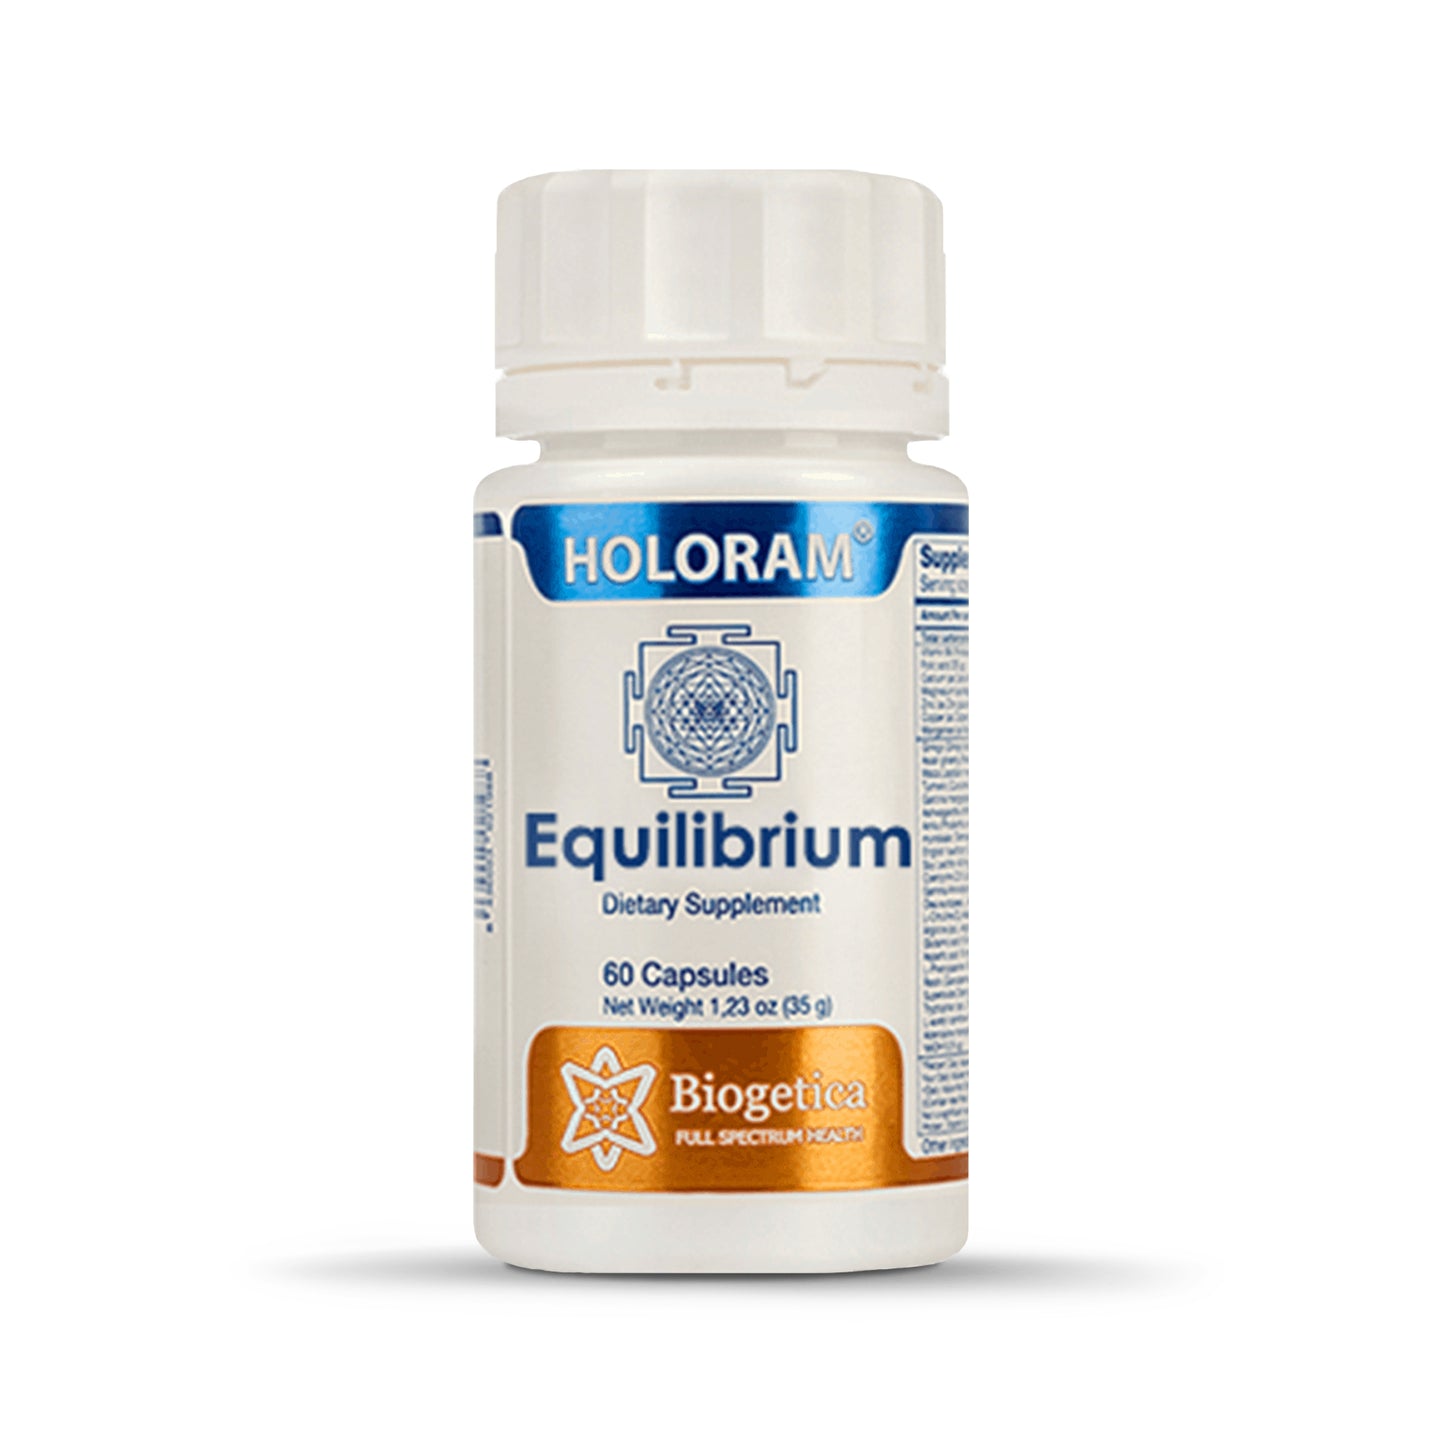 Biogetica Holoram Equilibrium, 60 Capsules